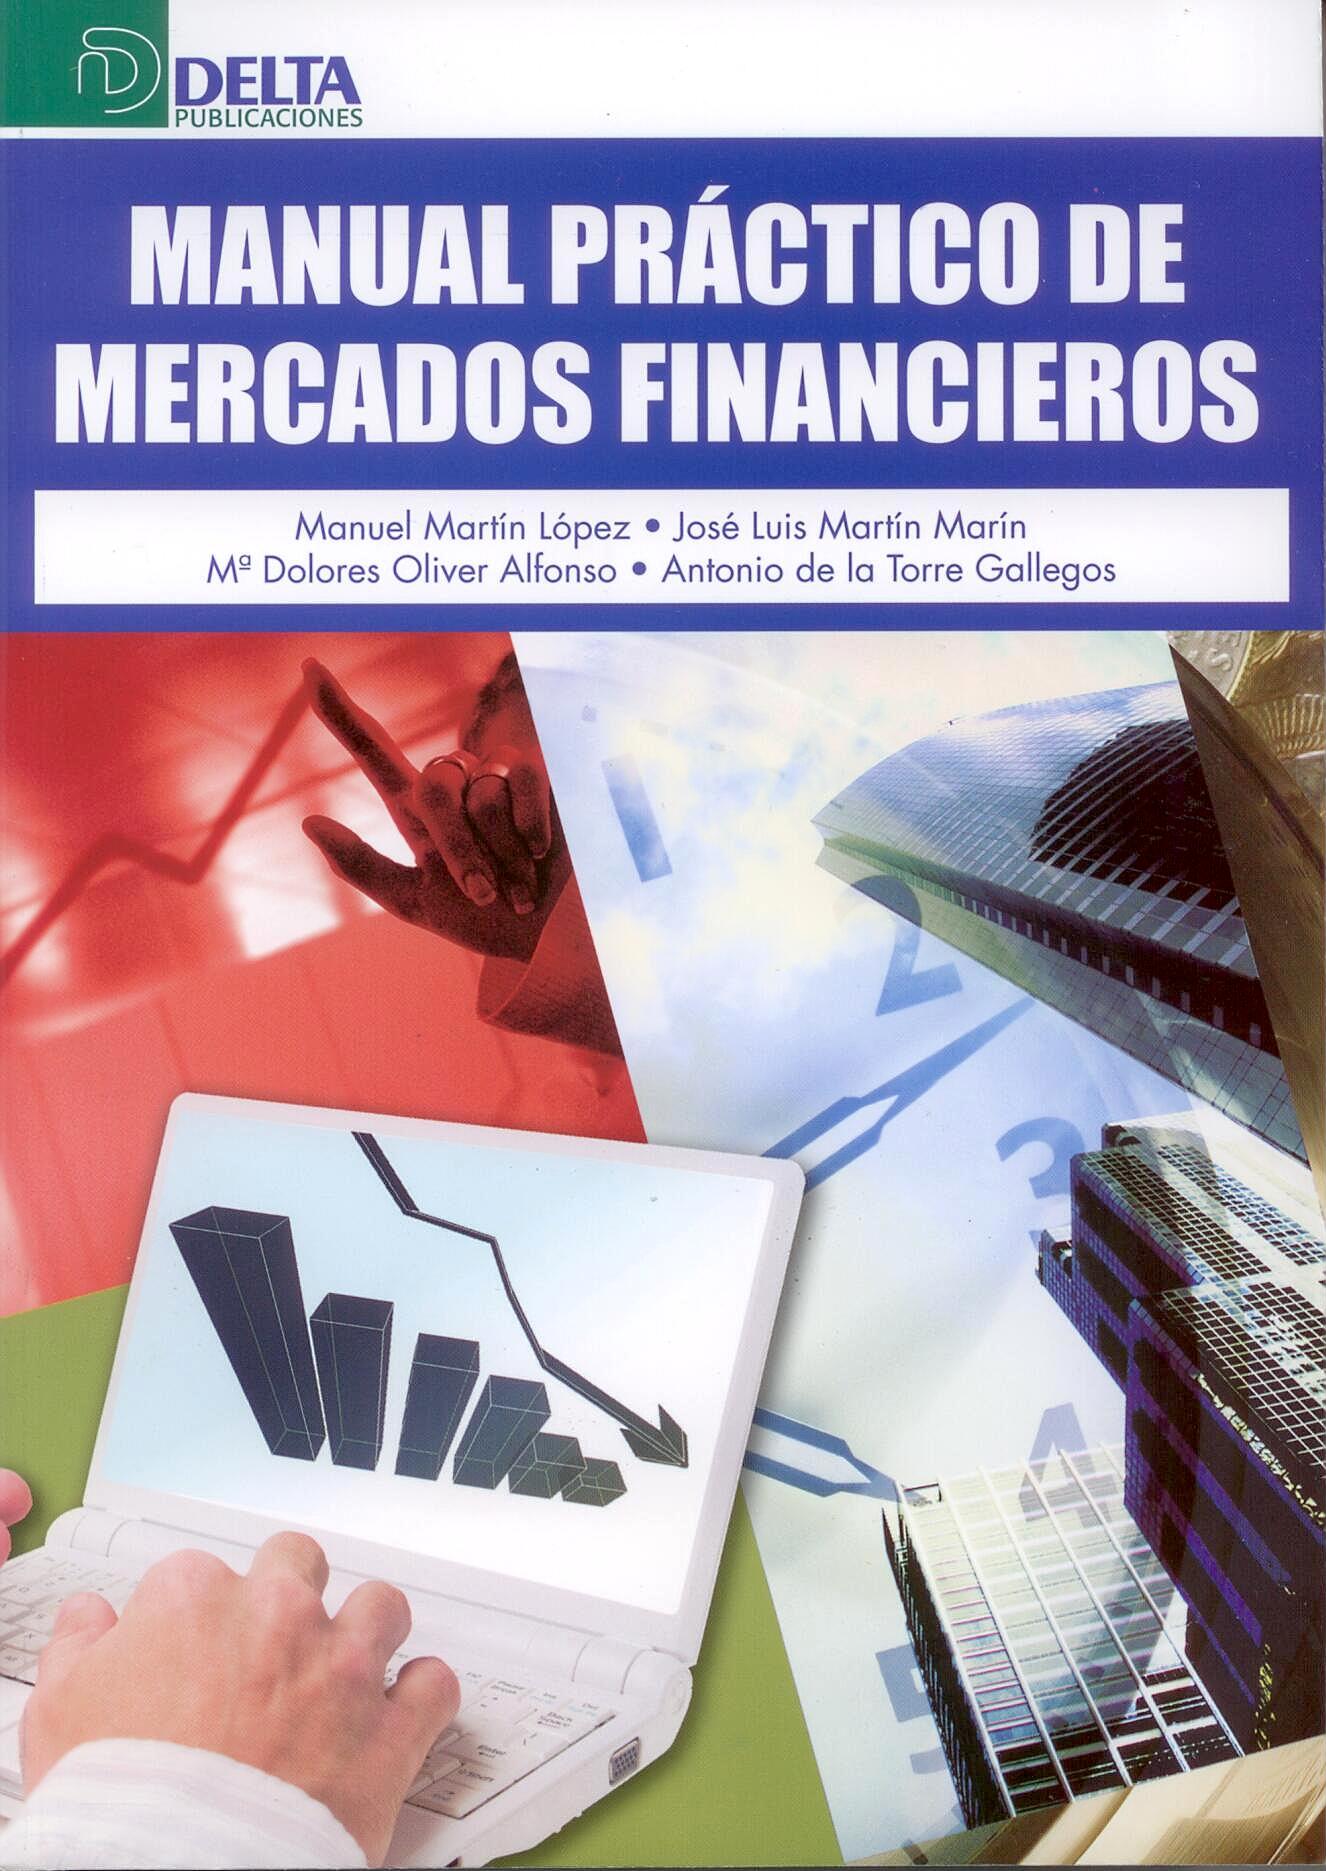 Manual Practico de Mercados Financieros